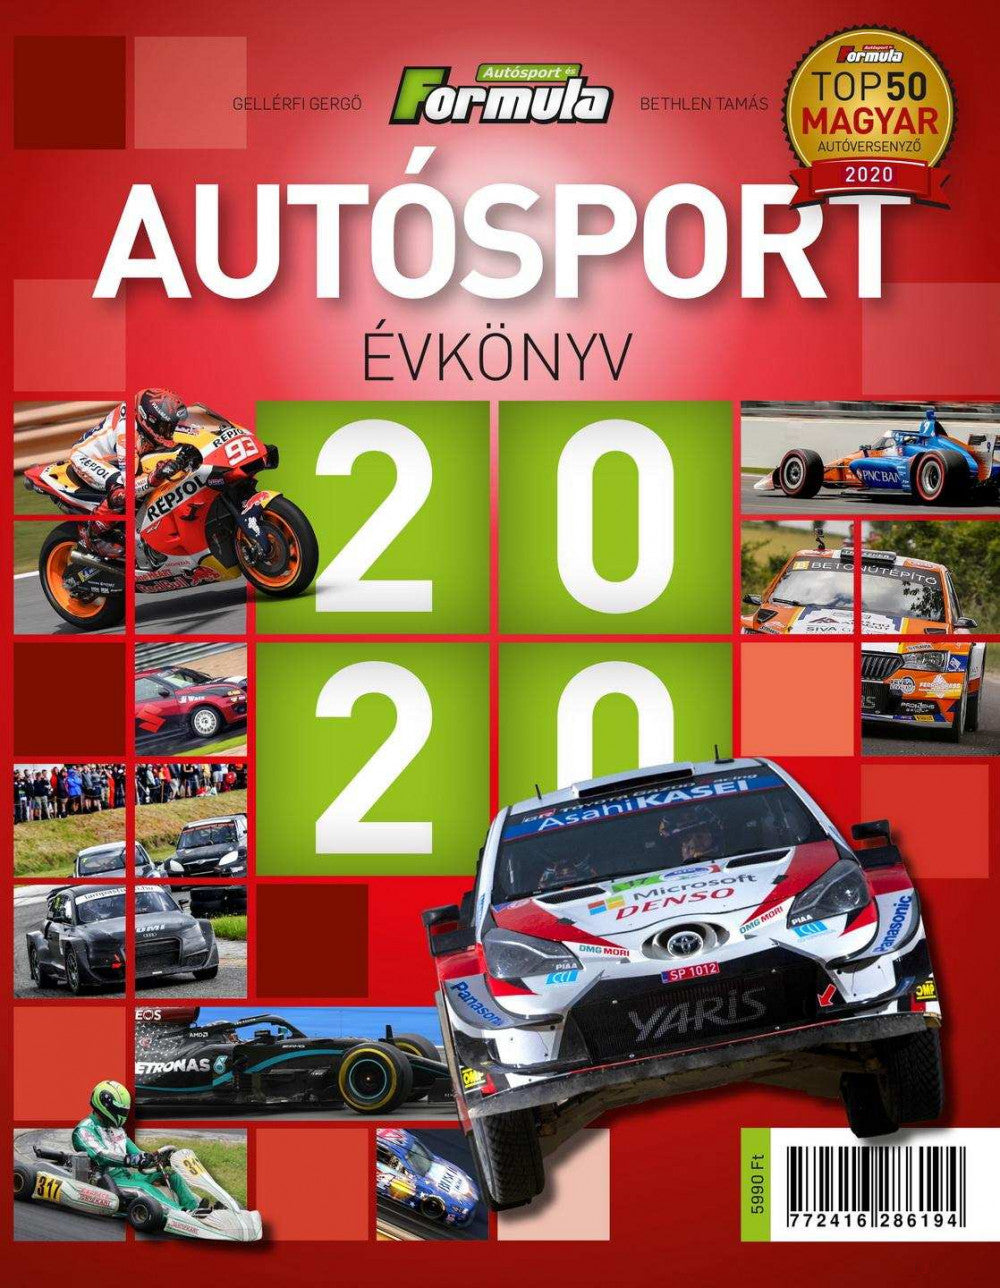 Autósport Évkönyv 2020 - Book